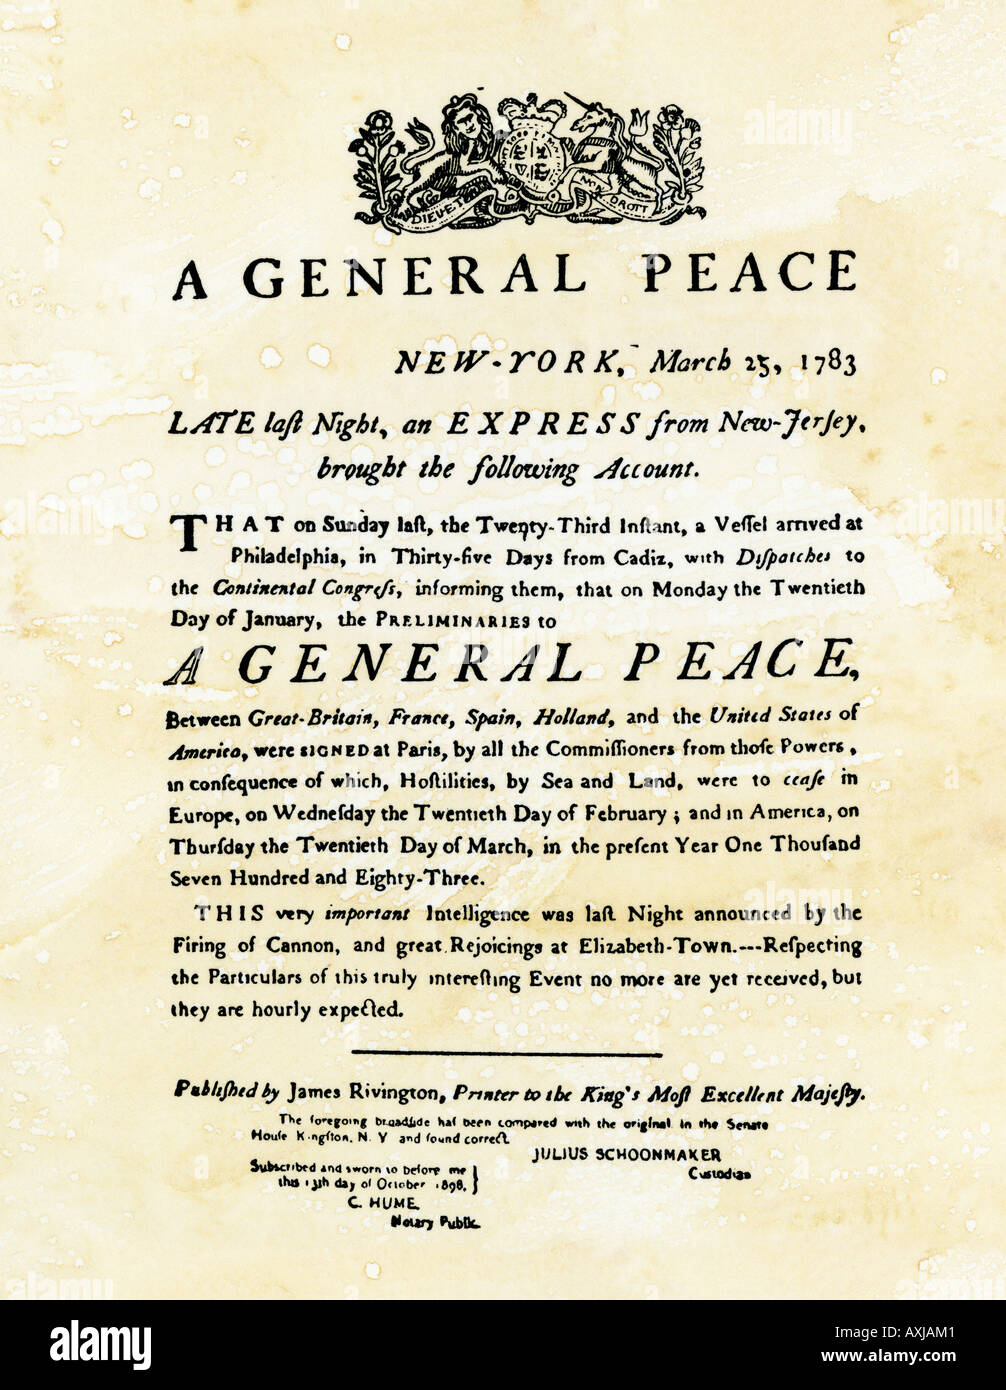 Annuncio del trattato di pace che termina la guerra rivoluzionaria stampato nella città di New York il 25 marzo 1783. Xilografia con un lavaggio ad acquerello Foto Stock